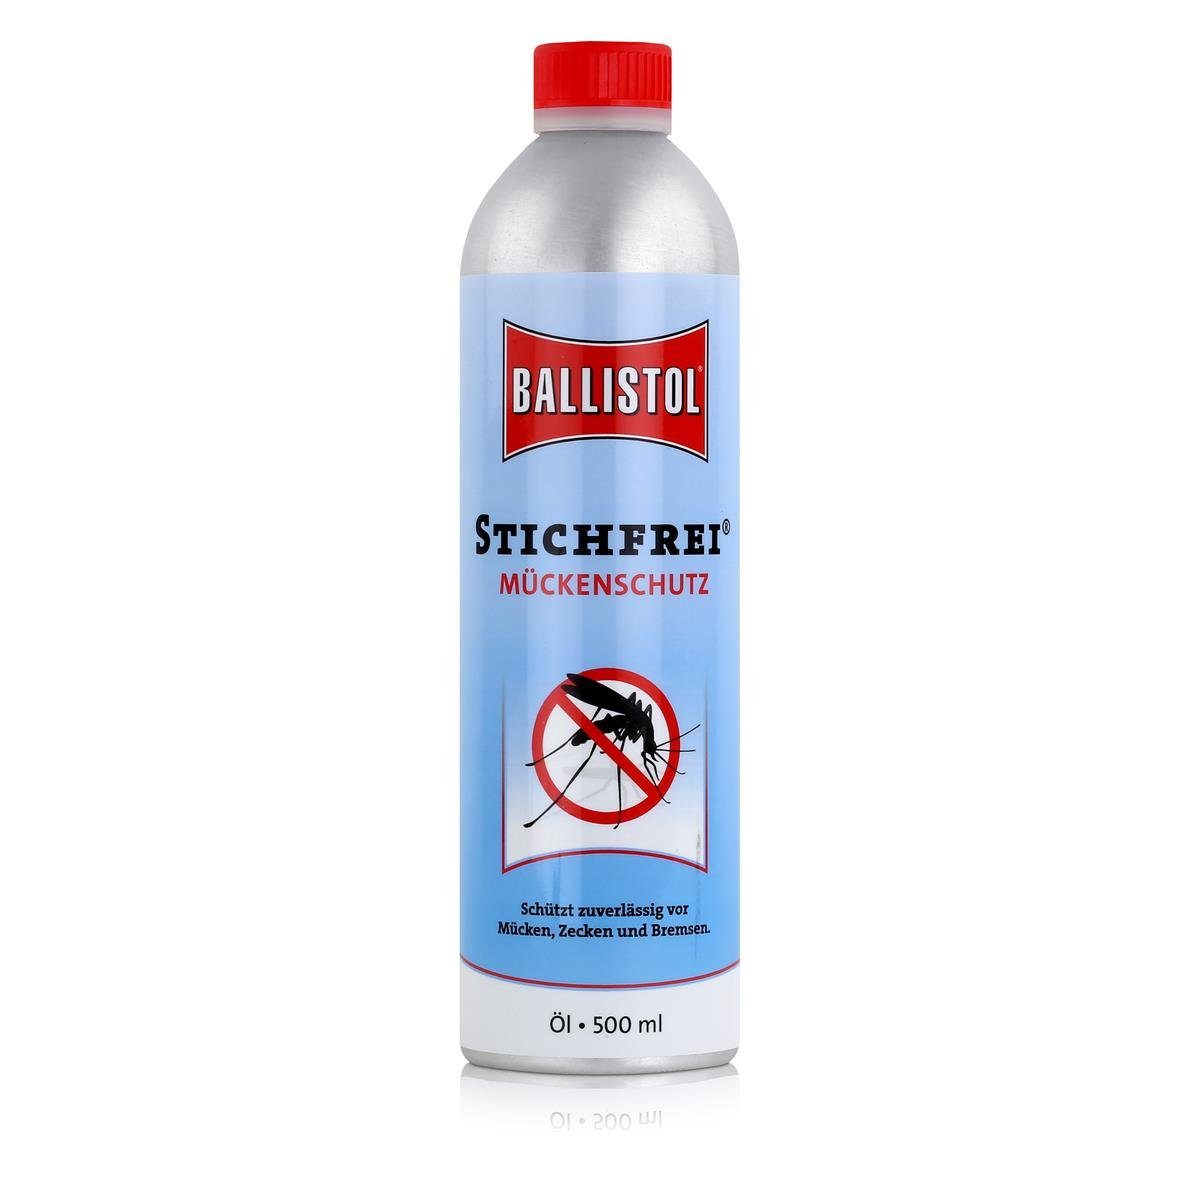 Ballistol Insektenspray Ballistol Stichfrei Öl 500ml - Schützt gegen Mücken, Zecken & Bremsen